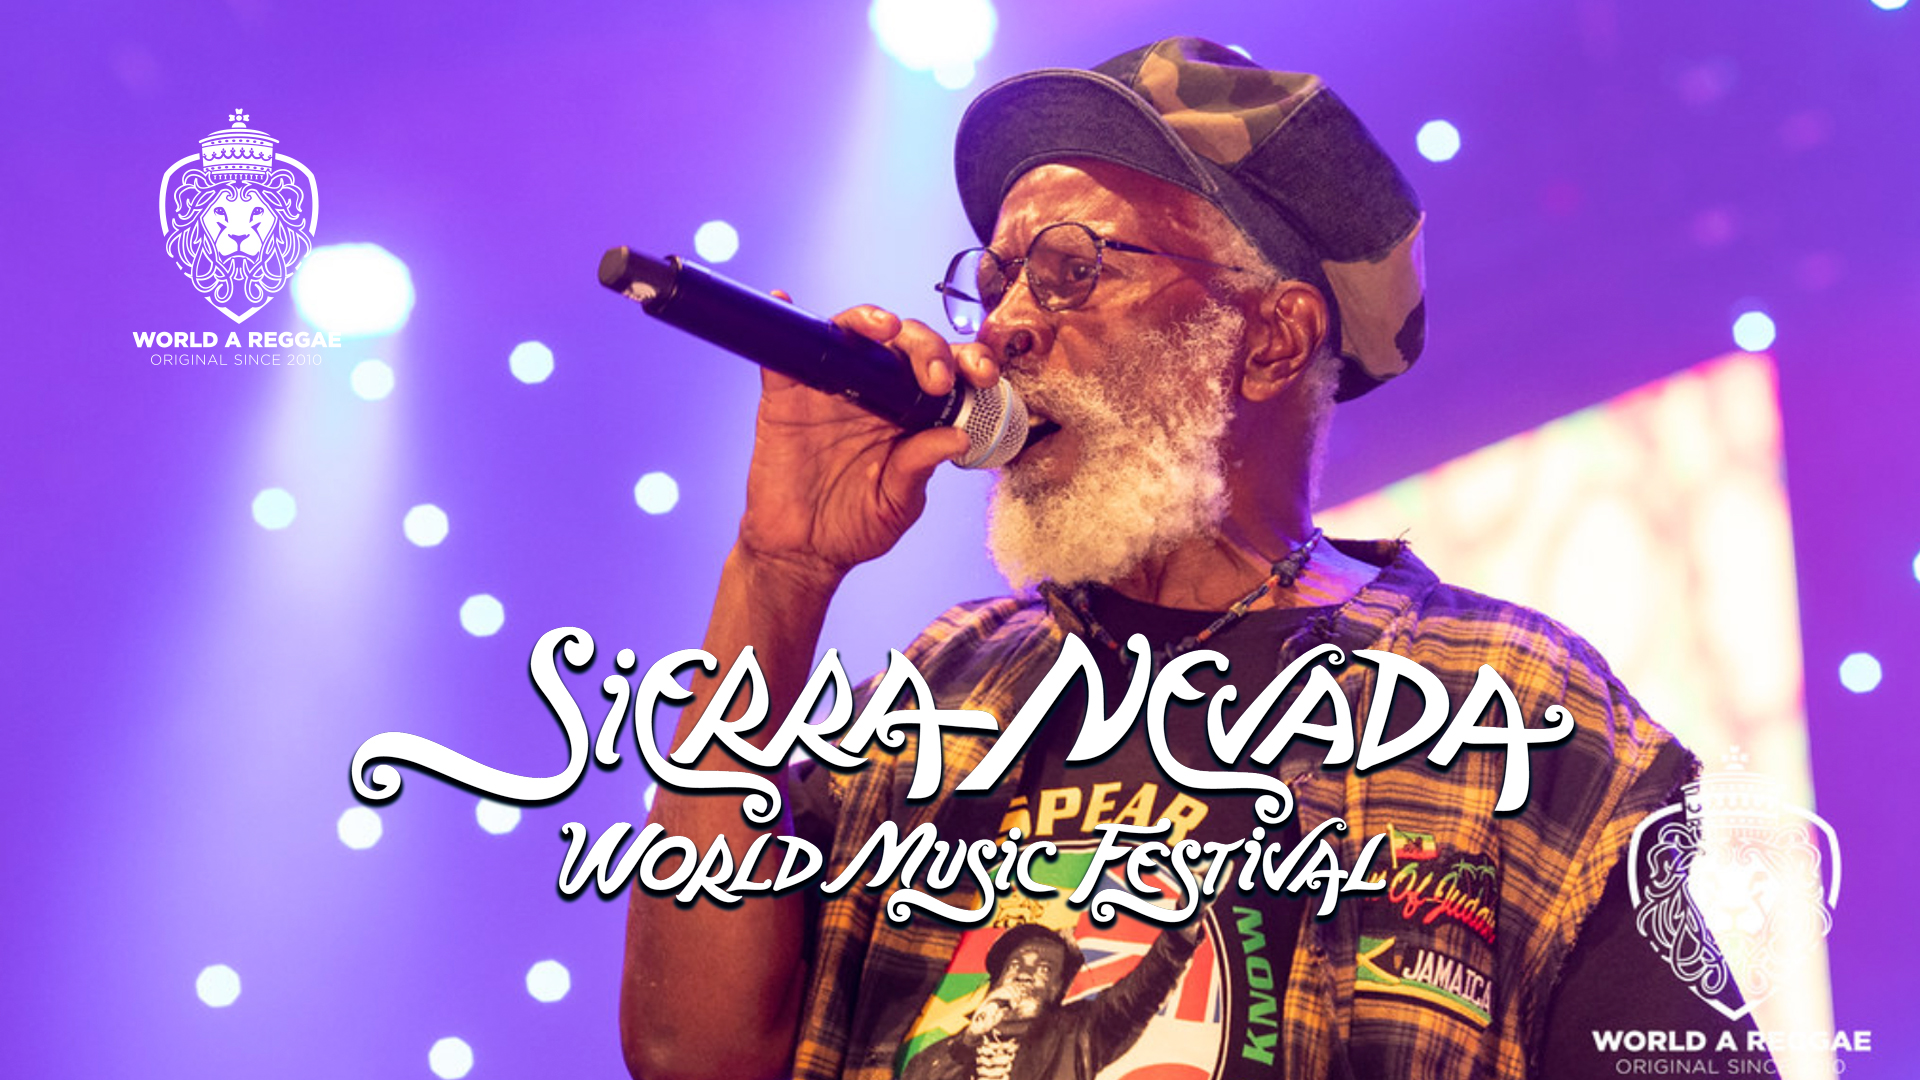 Sierra Nevada world music festival 2023